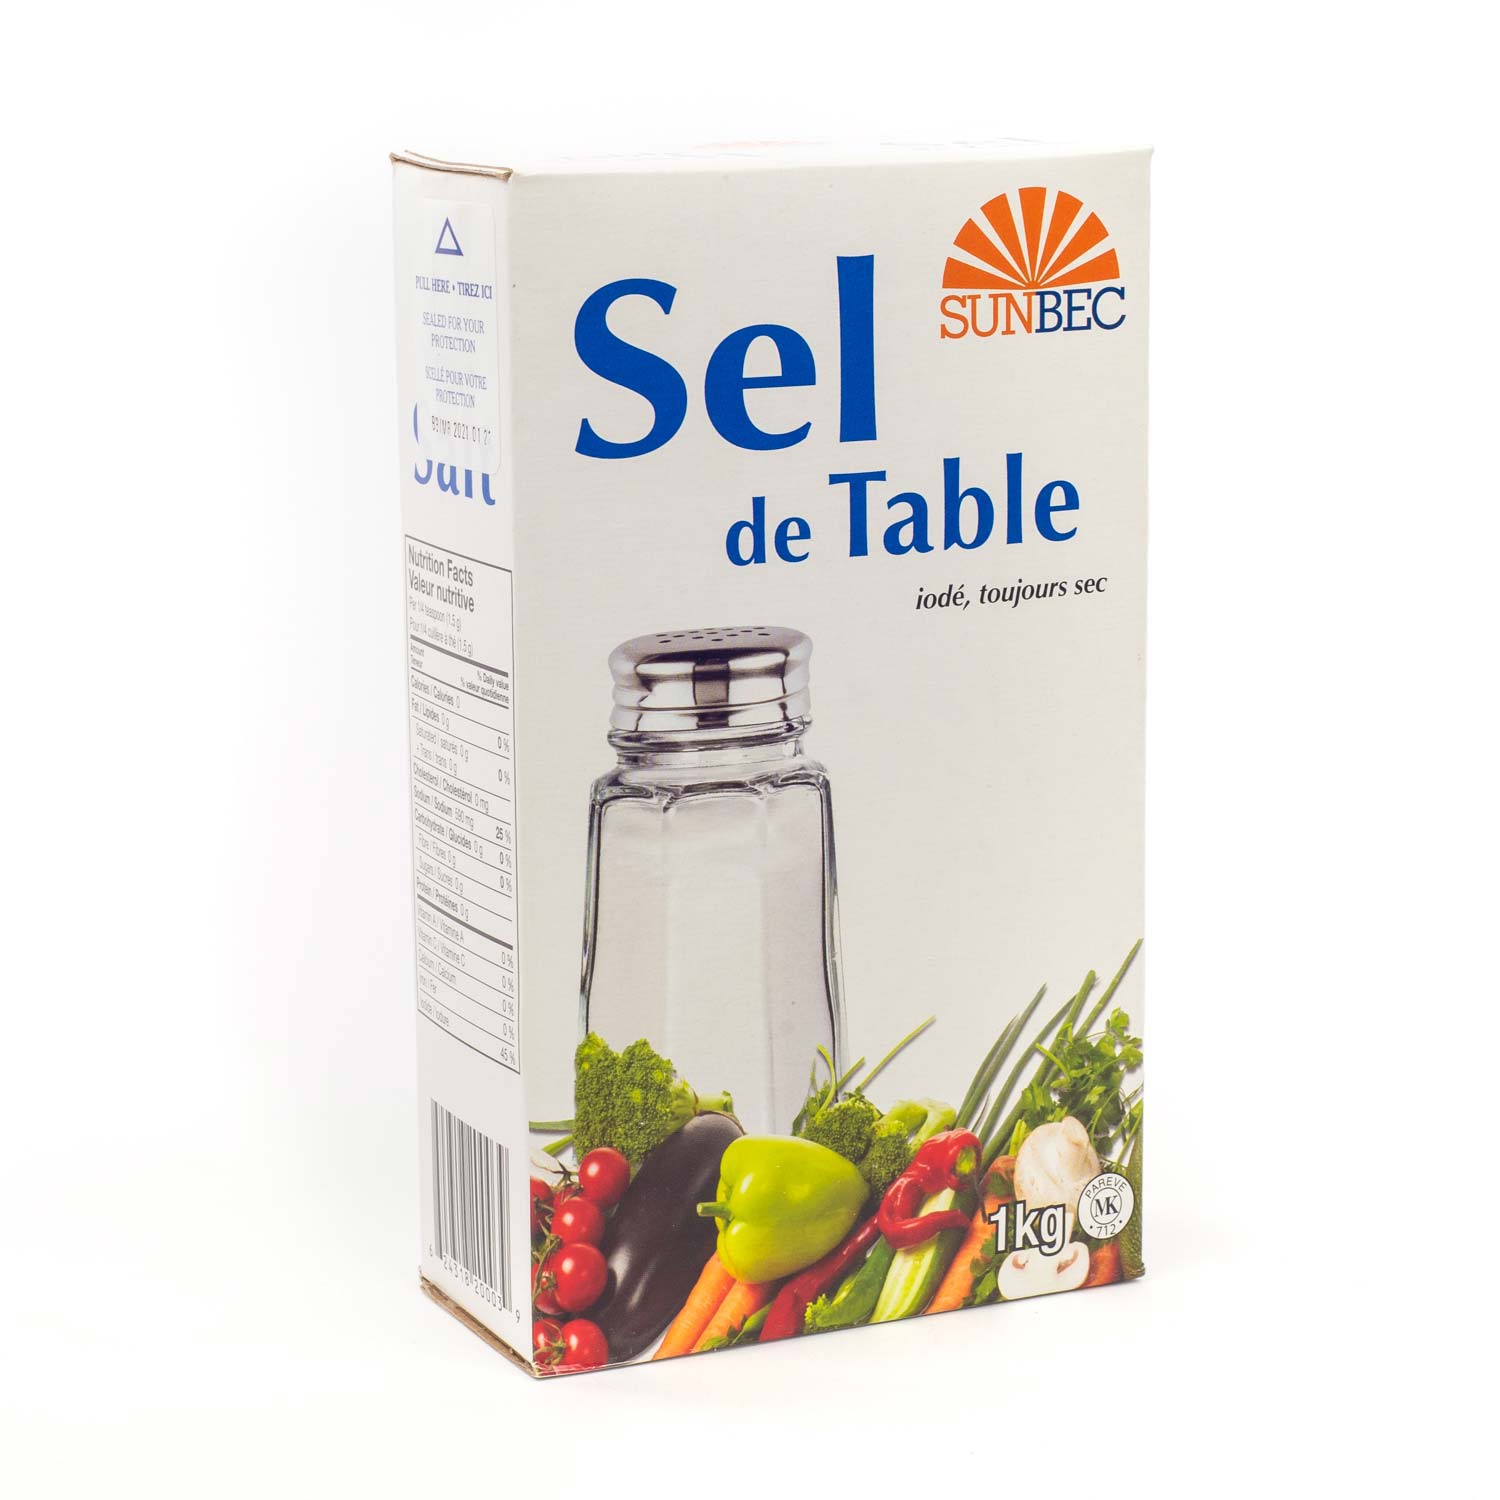 Sel de mer ou sel de table : Lequel est meilleur pour la santé? – Familiprix